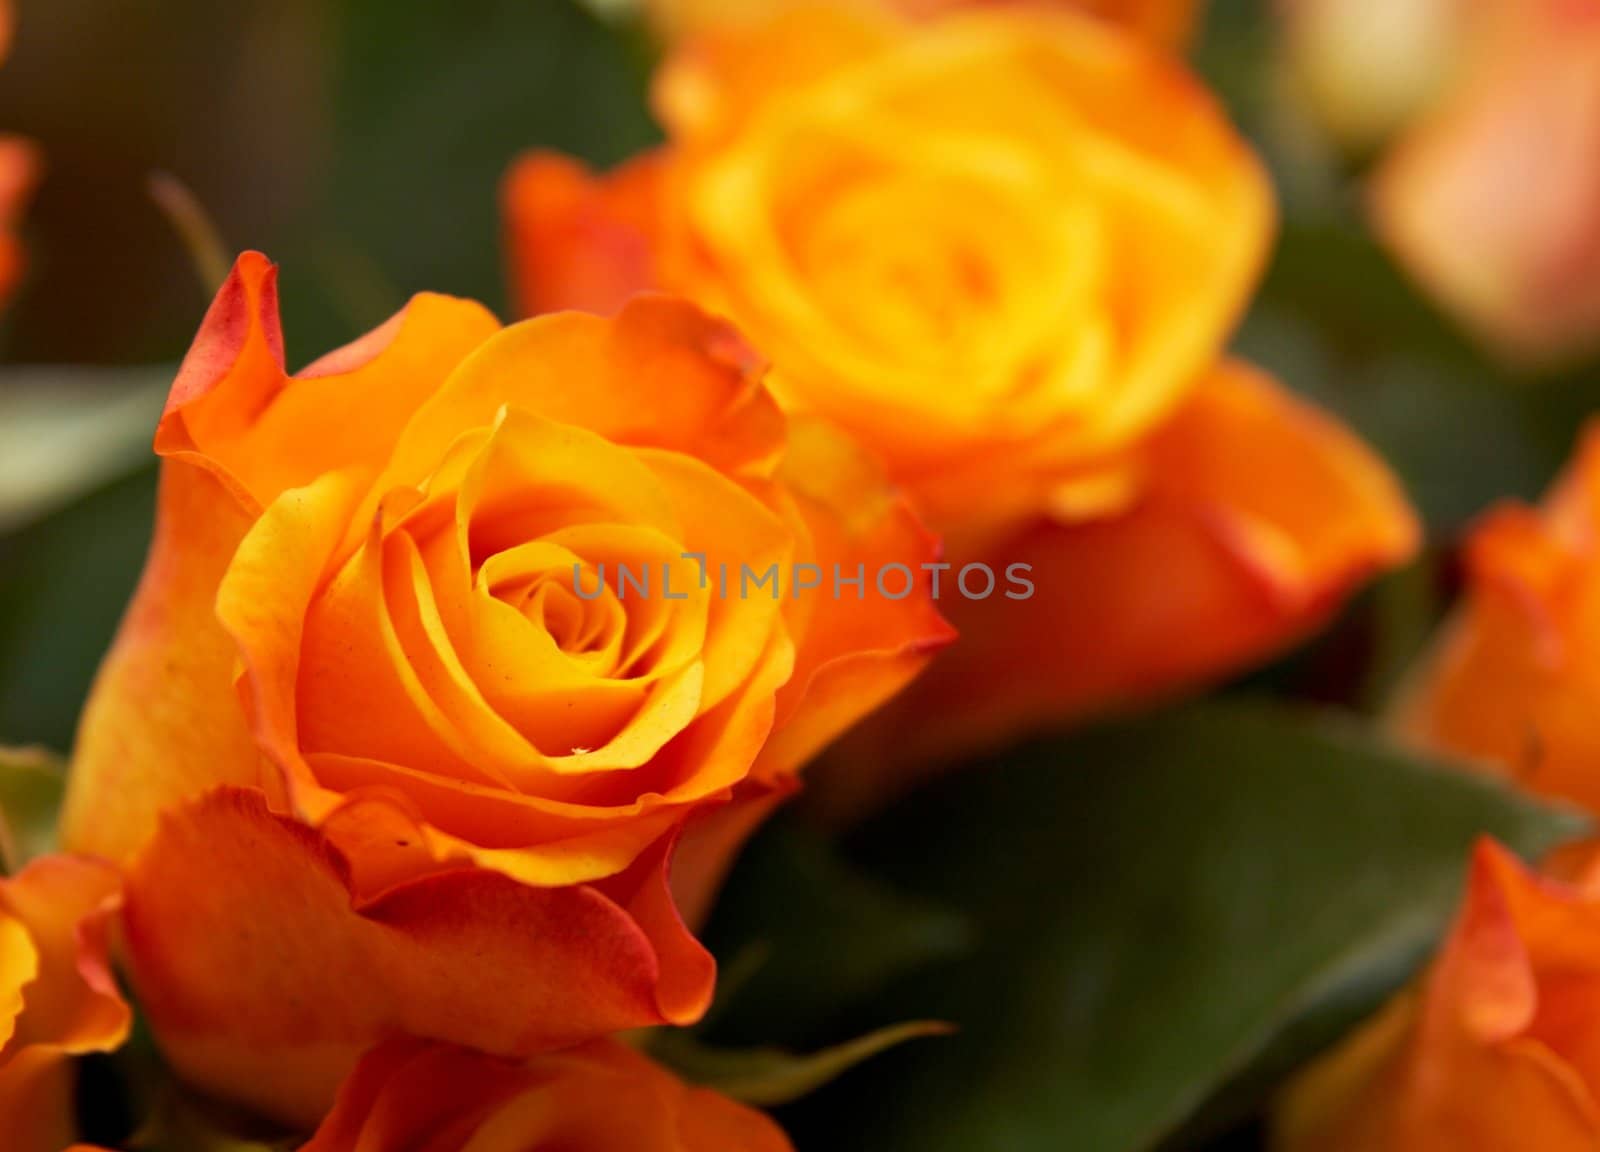 Orange roses background by Nikonas